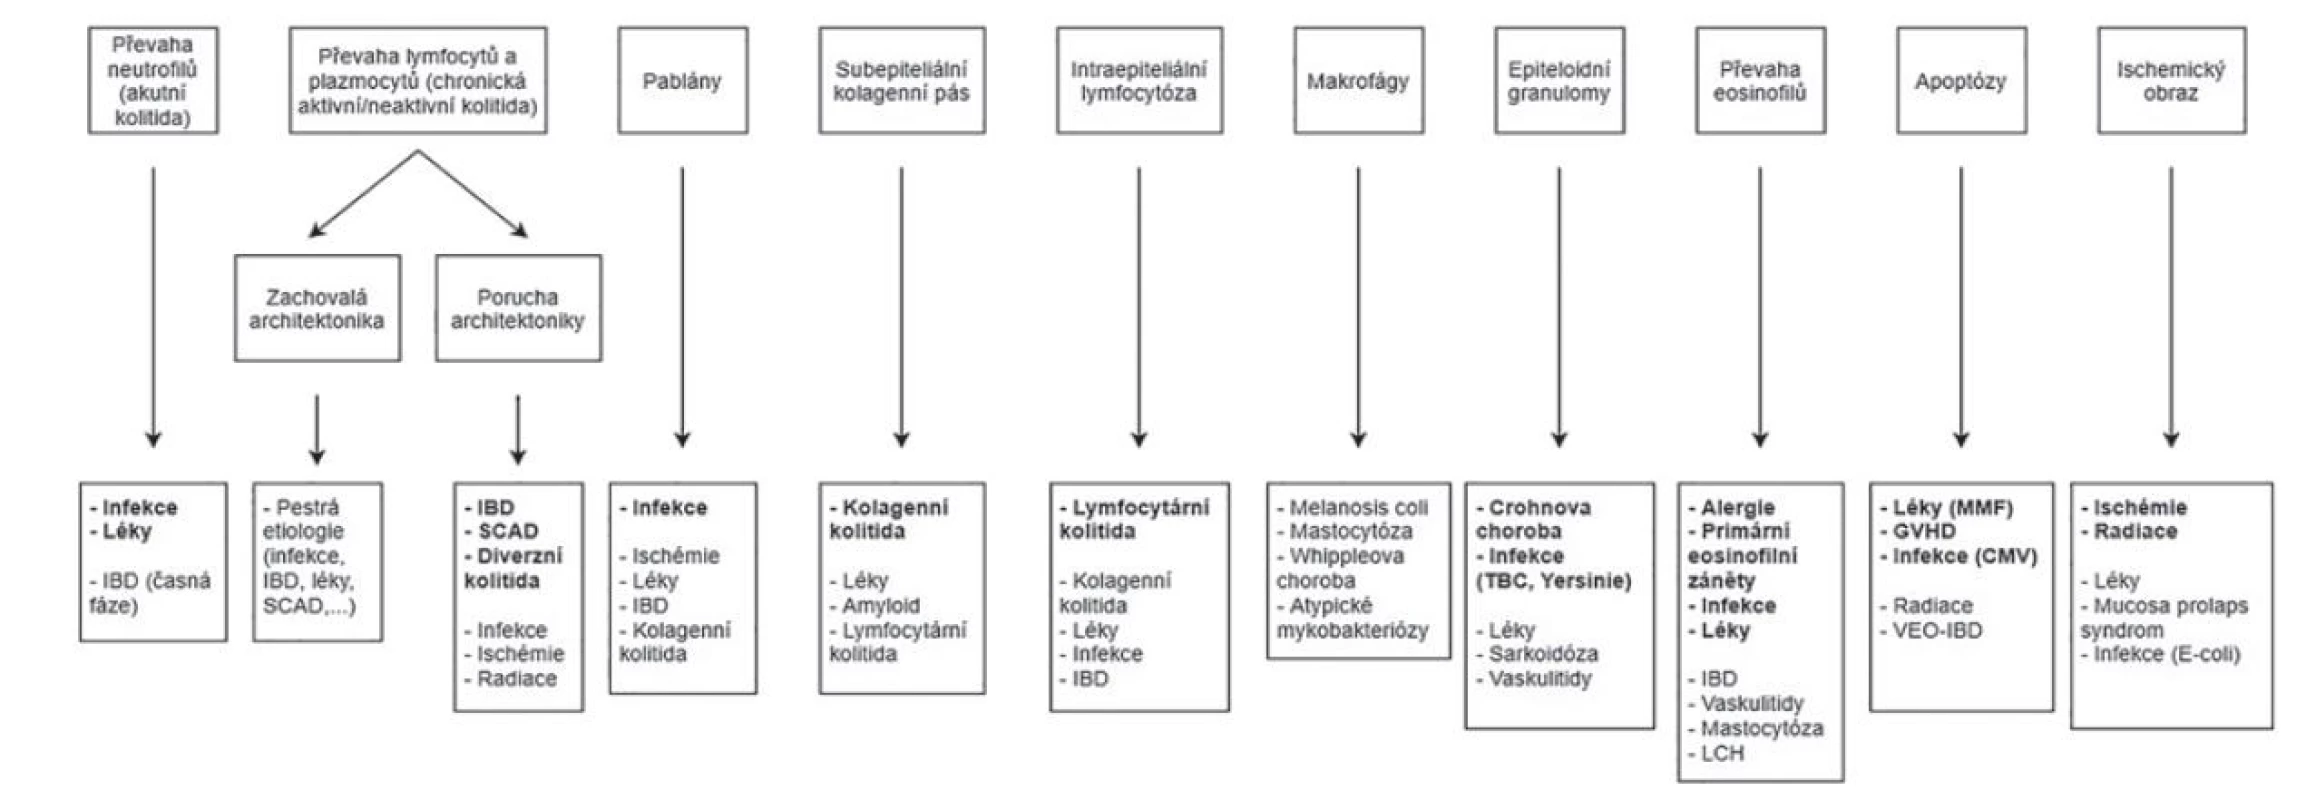 Morfologické vzorce kolitid a jejich diferenciální diagnóza (Převzato a modifikováno z: Moore M, Feakins RM, Lauwers GY. Non-neoplastic colorectal
disease biopsies: evaluation and differential diagnosis. J Clin Pathol 2020; 73(12): 783-792).<br>
CMV = cytomegalovirus; GVHD = reakce štěpu proti hostiteli; IBD = zánětlivá střevní onemocnění; LCH = histiocytóza z Langerhansových buněk; MMF = mykofenolát
mofetil; SCAD = segmentální kolitida asociovaná s divertikulózou; TBC = tuberkulóza; VEO-IBD = zánětlivá střevní onemocnění s velmi časným nástupem
(very early onset inflammatory bowel disease).<br>
S ohledem na jeho veliké rozměry bylo schéma v plném rozlišení umístěno i jako e-Supplementum na webové stránky časopisu ČS patologie (http://www.cspatologie.cz/supplementa.php).